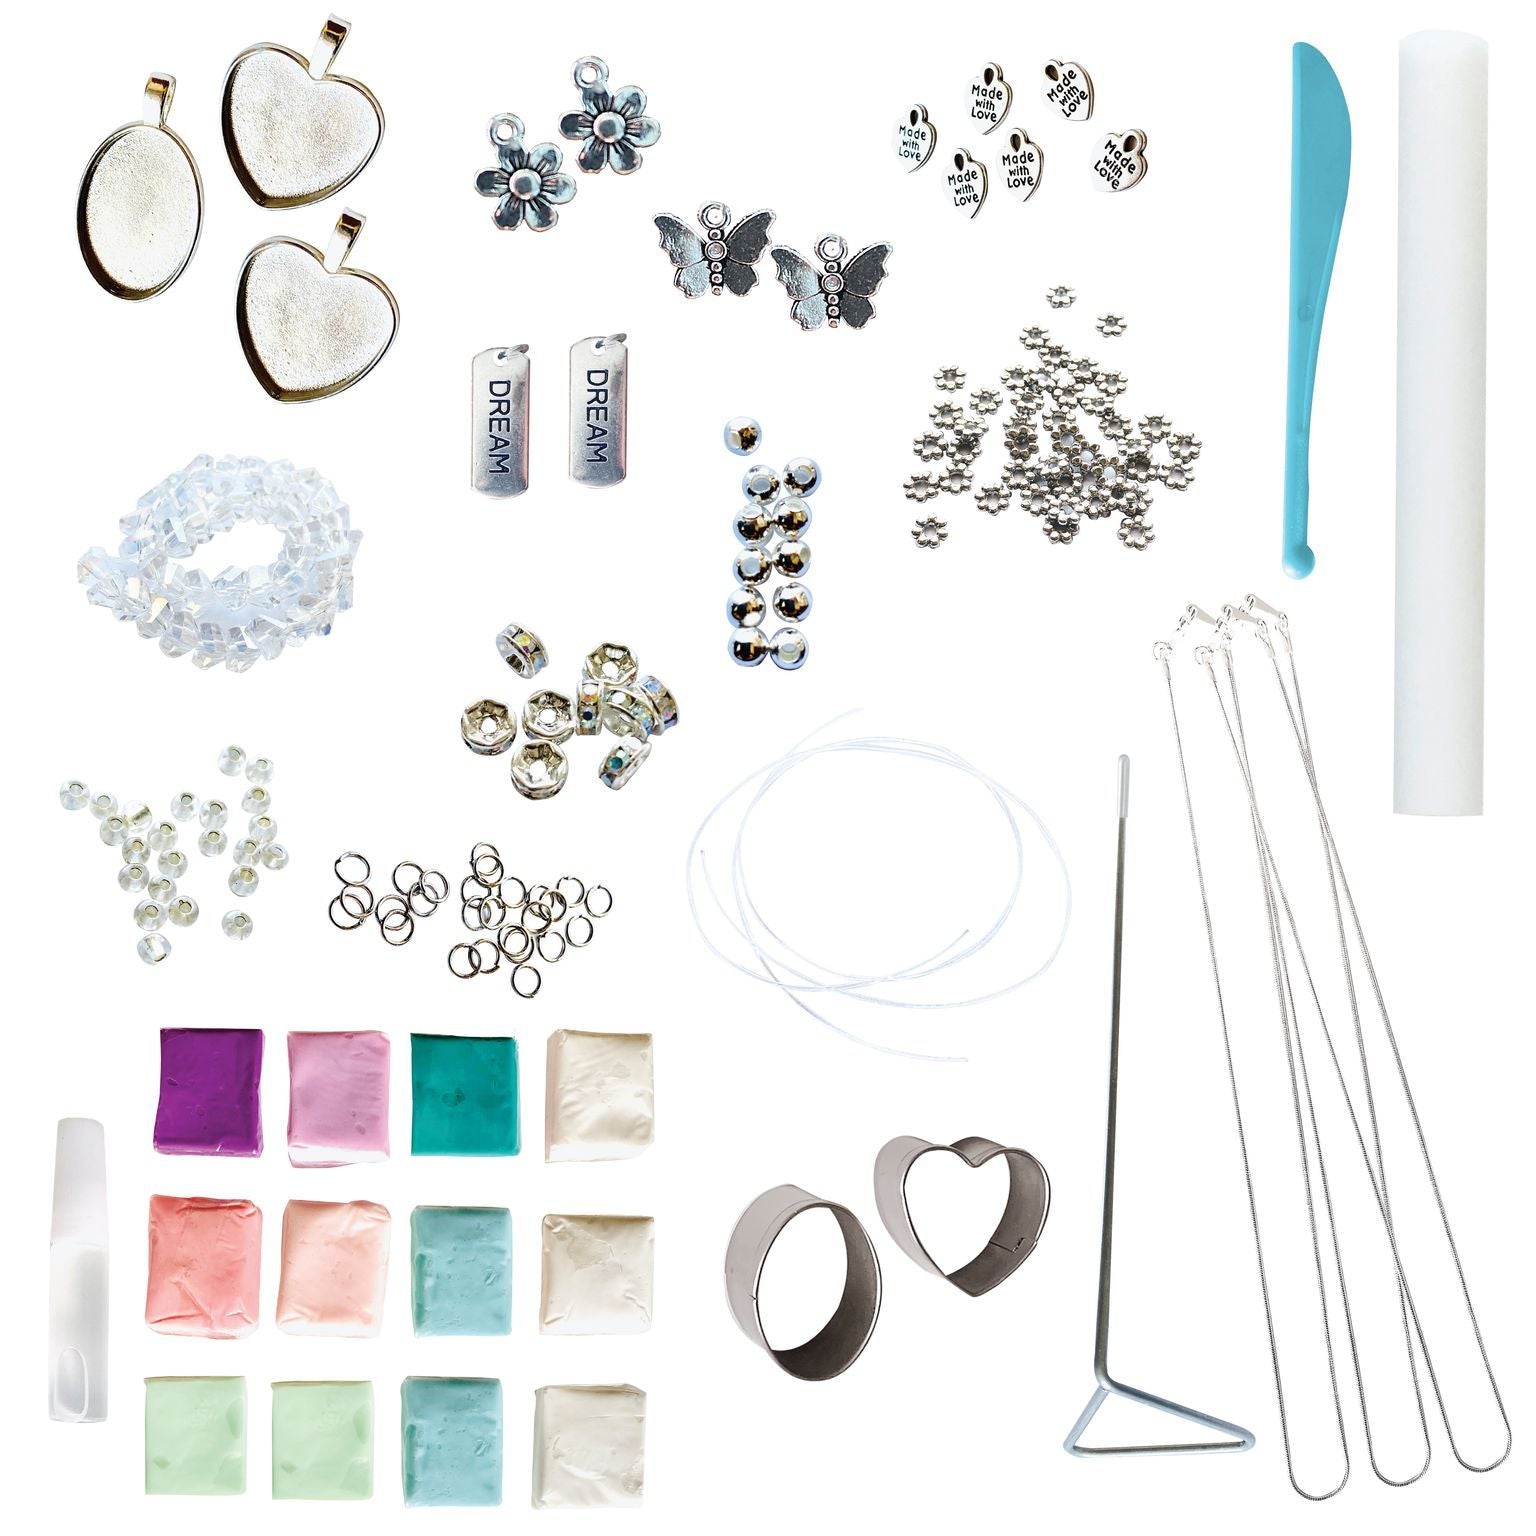 DIY Clay Jewelry Kit